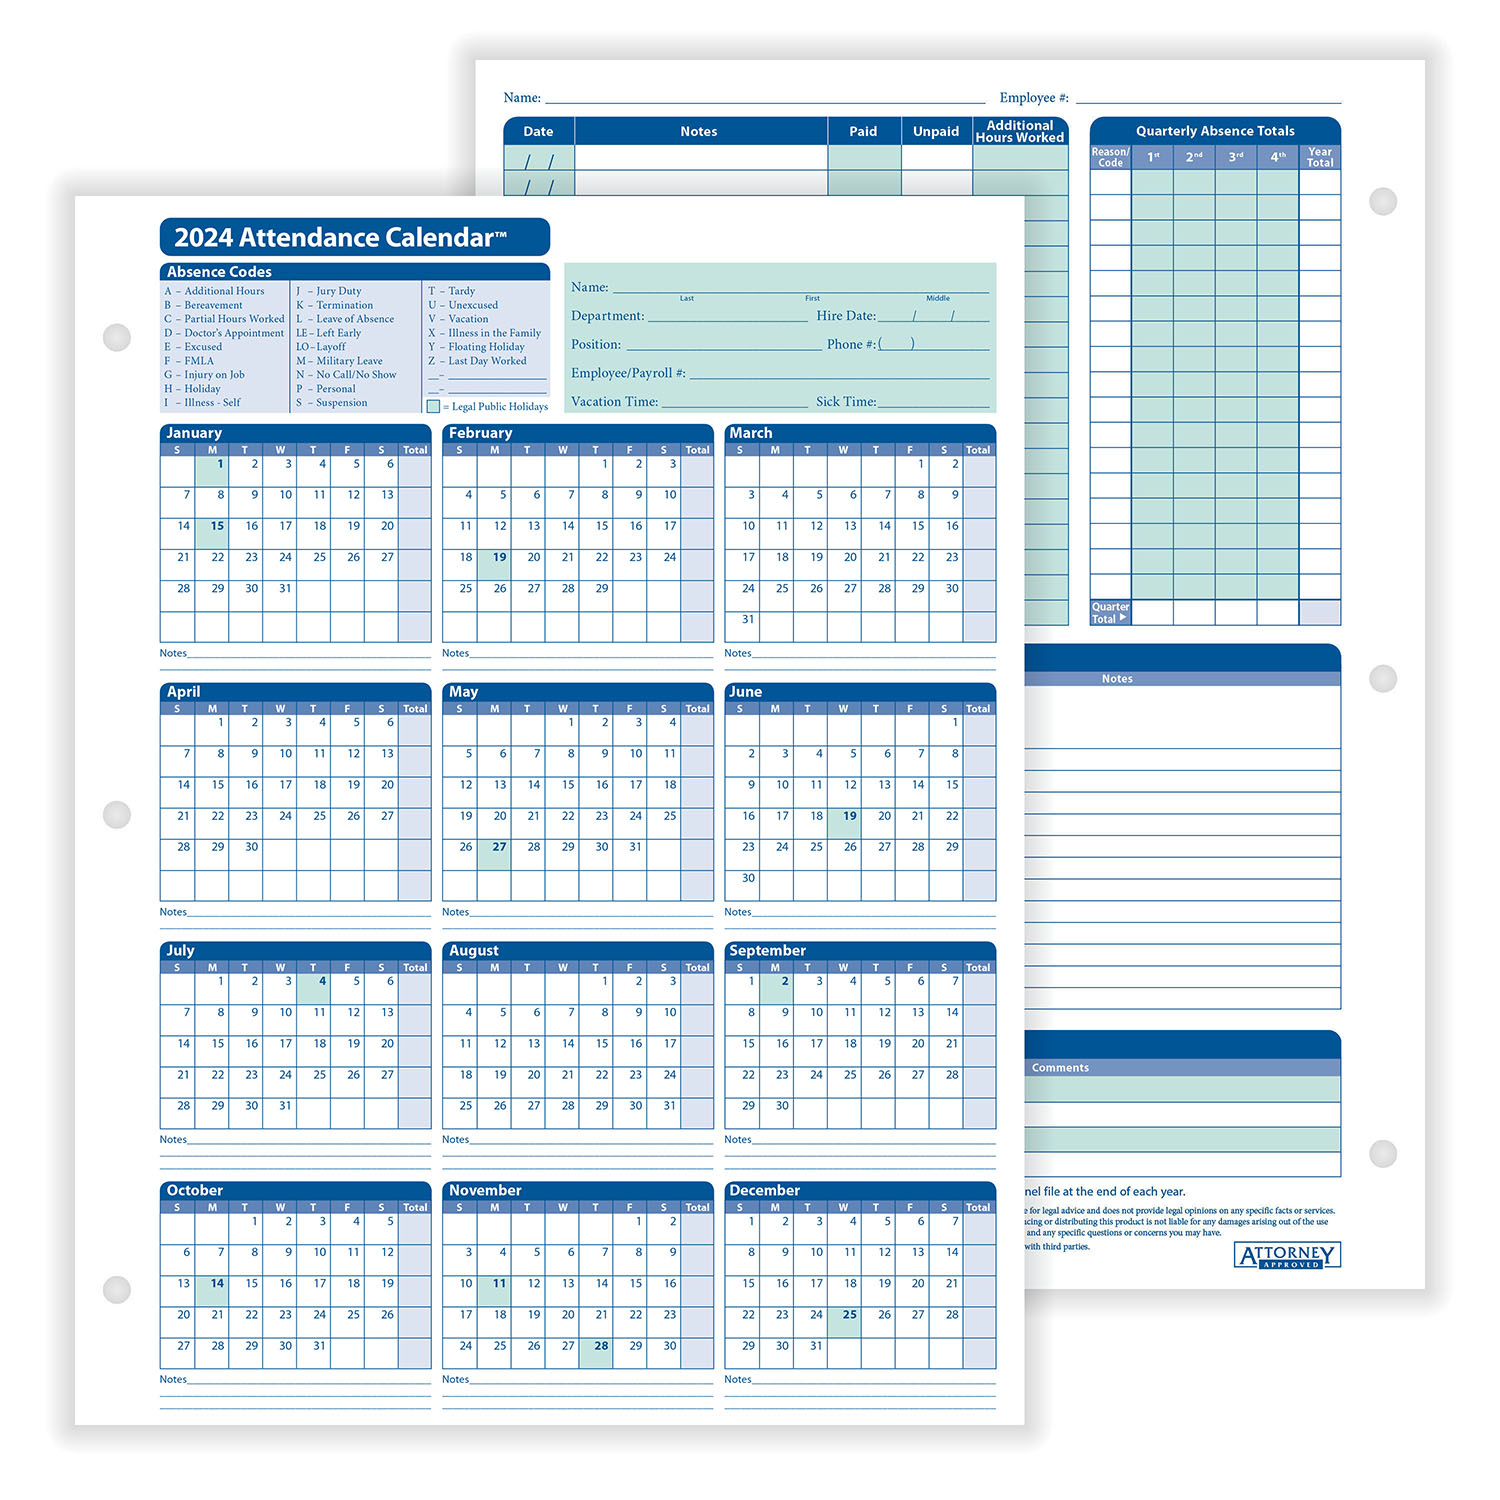 Complyrightdealer | 2024 Attendance Calendar Card, Pack Of 25 inside 2024 Attendance Calendar Cards